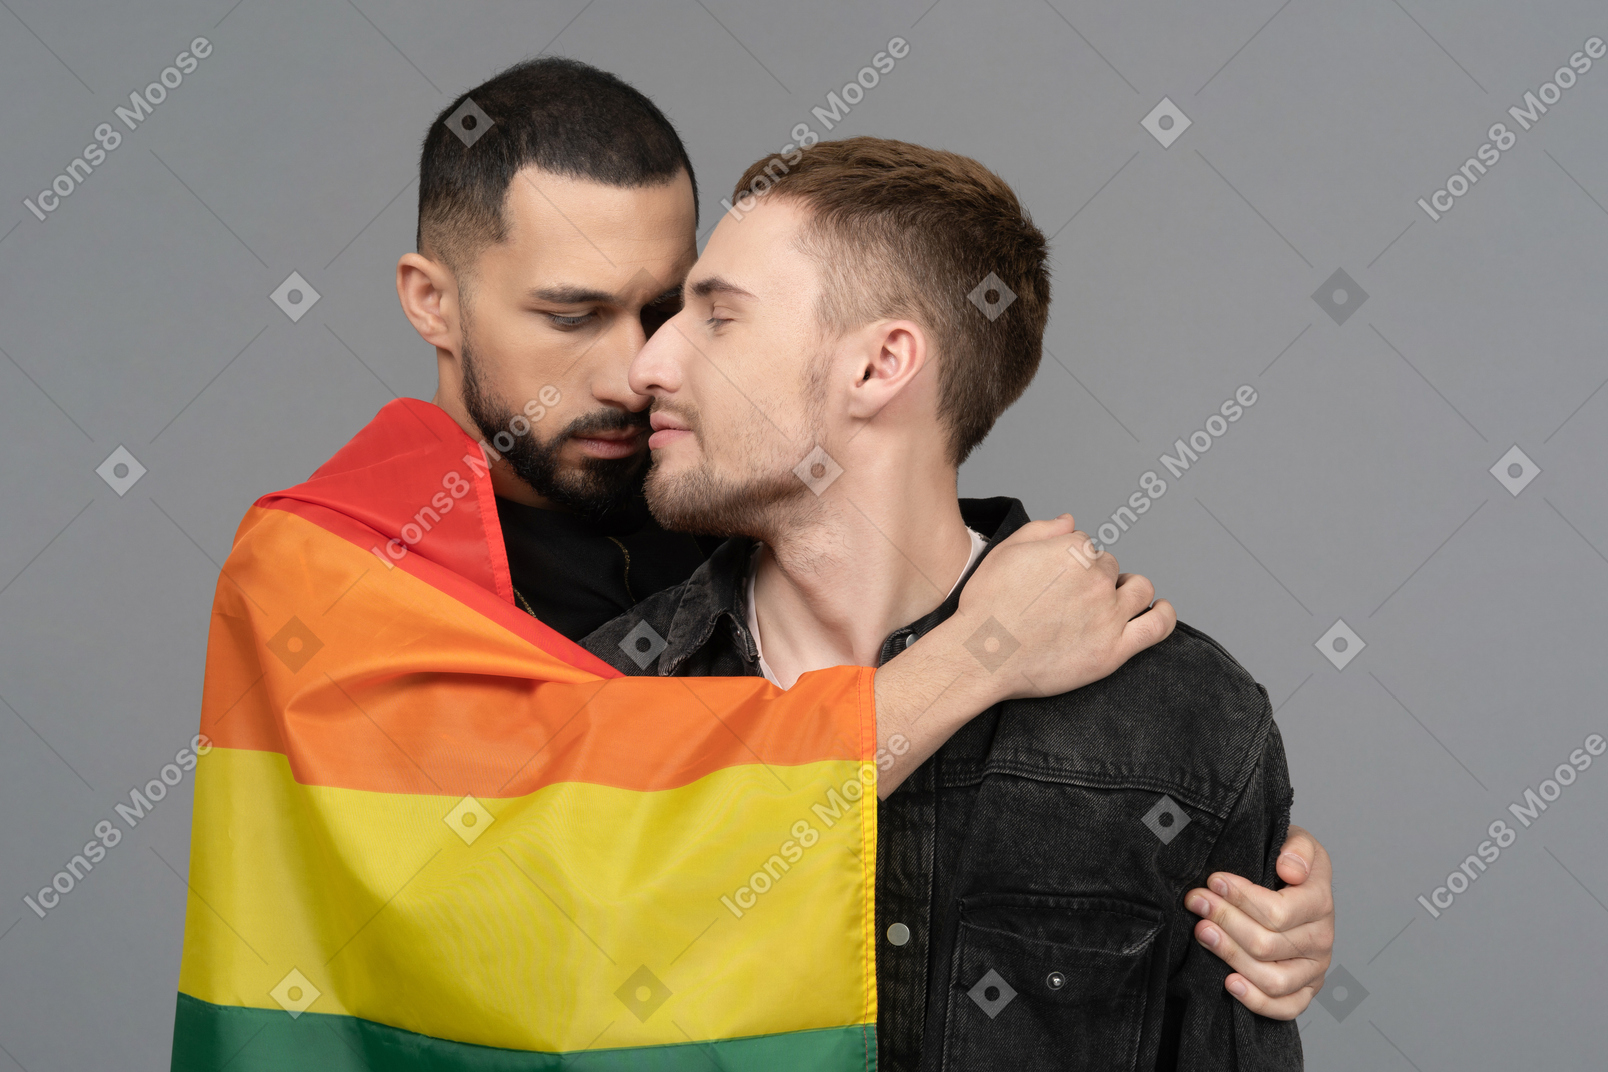 Vista frontal de dos jóvenes medio abrazados sensualmente y con bandera lgbt